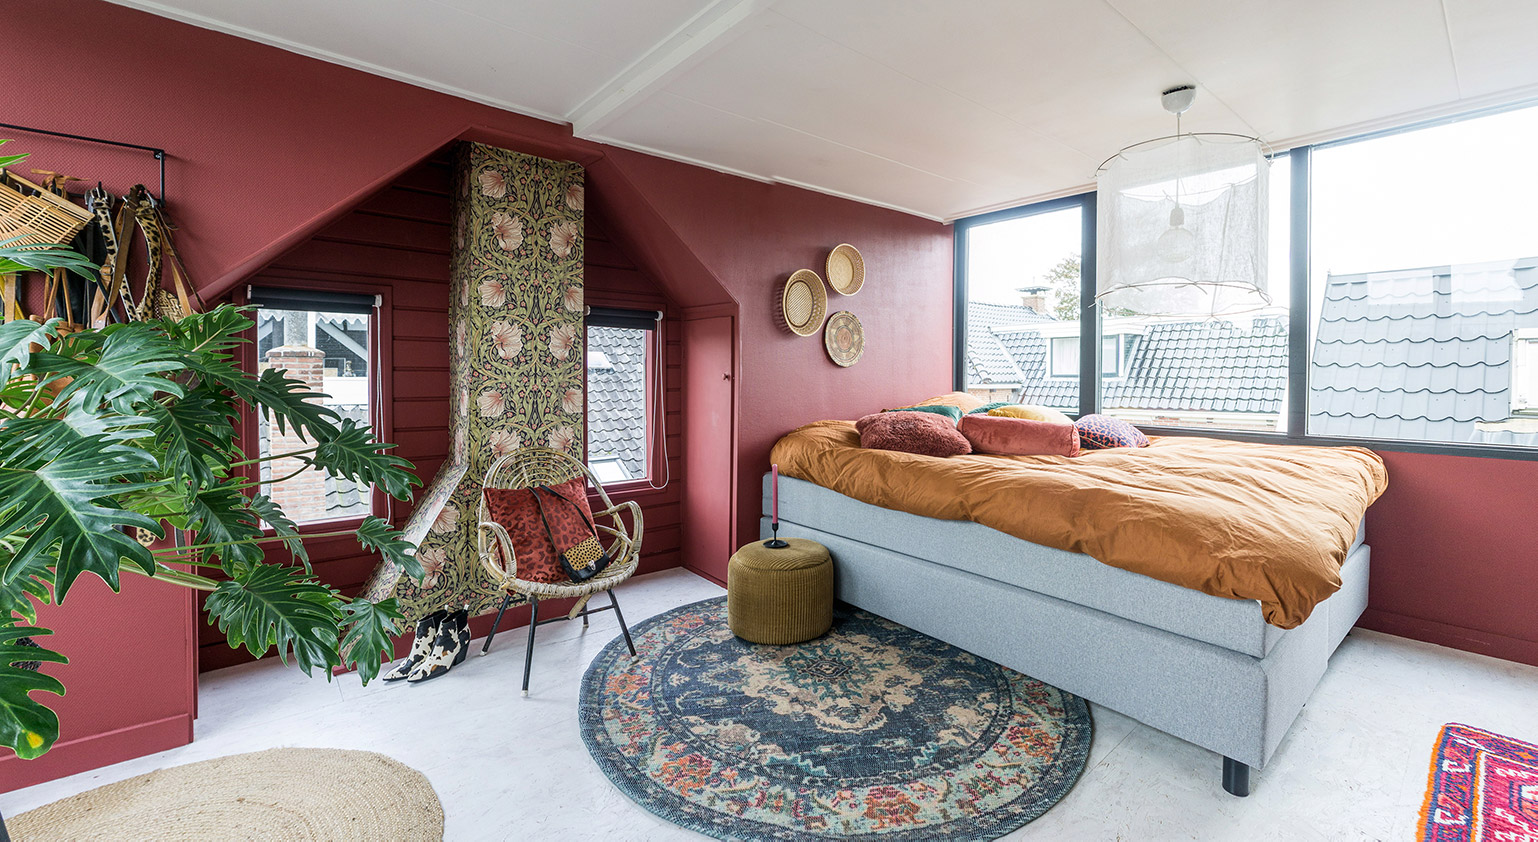 Kleurrijke woonstijl | Kleurtjes en behangprintjes slaapkamer | Stek Magazine 